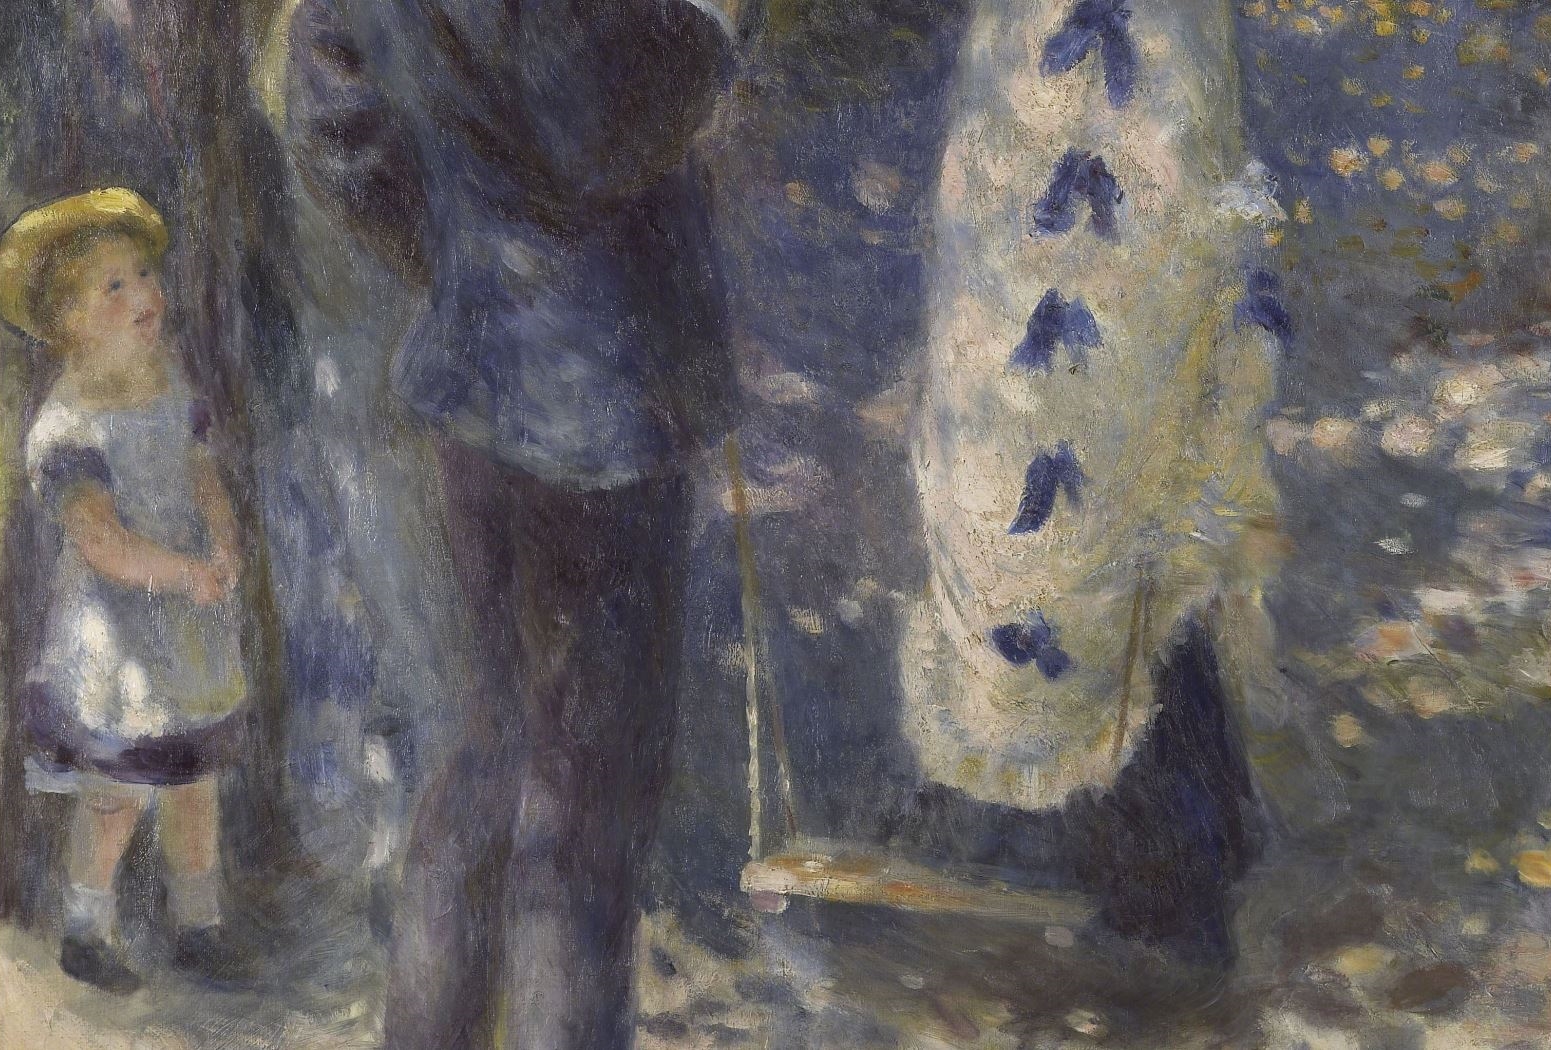 Pierre+Auguste+Renoir-1841-1-19 (694).JPG